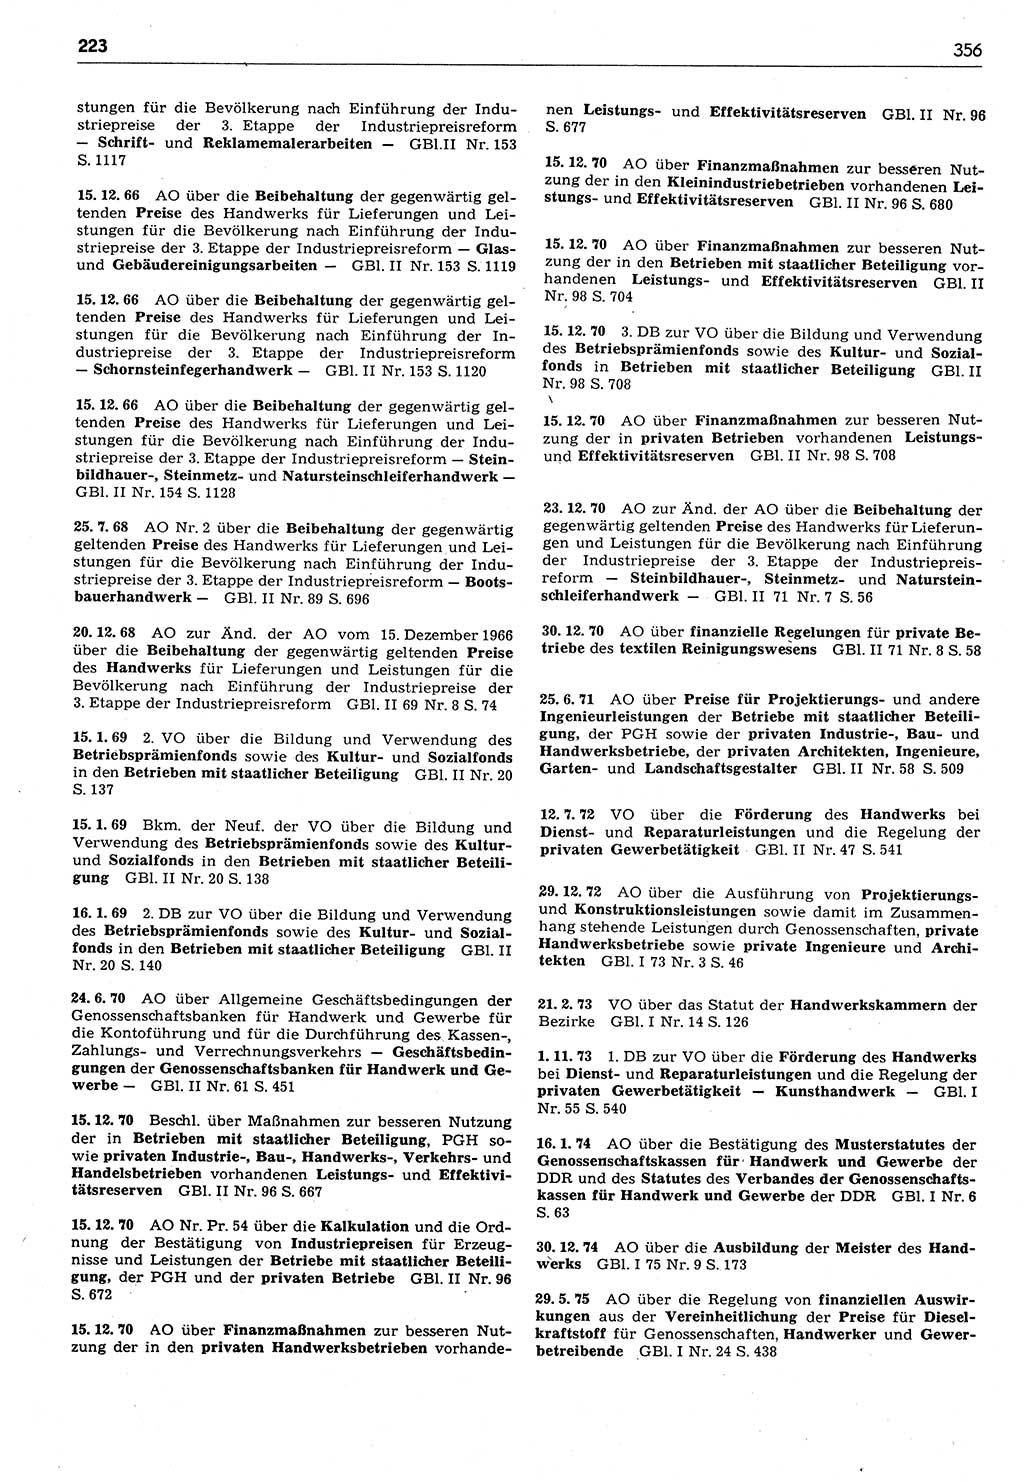 Das geltende Recht der Deutschen Demokratischen Republik (DDR) 1949-1988, Seite 356 (Gelt. R. DDR 1949-1988, S. 356)